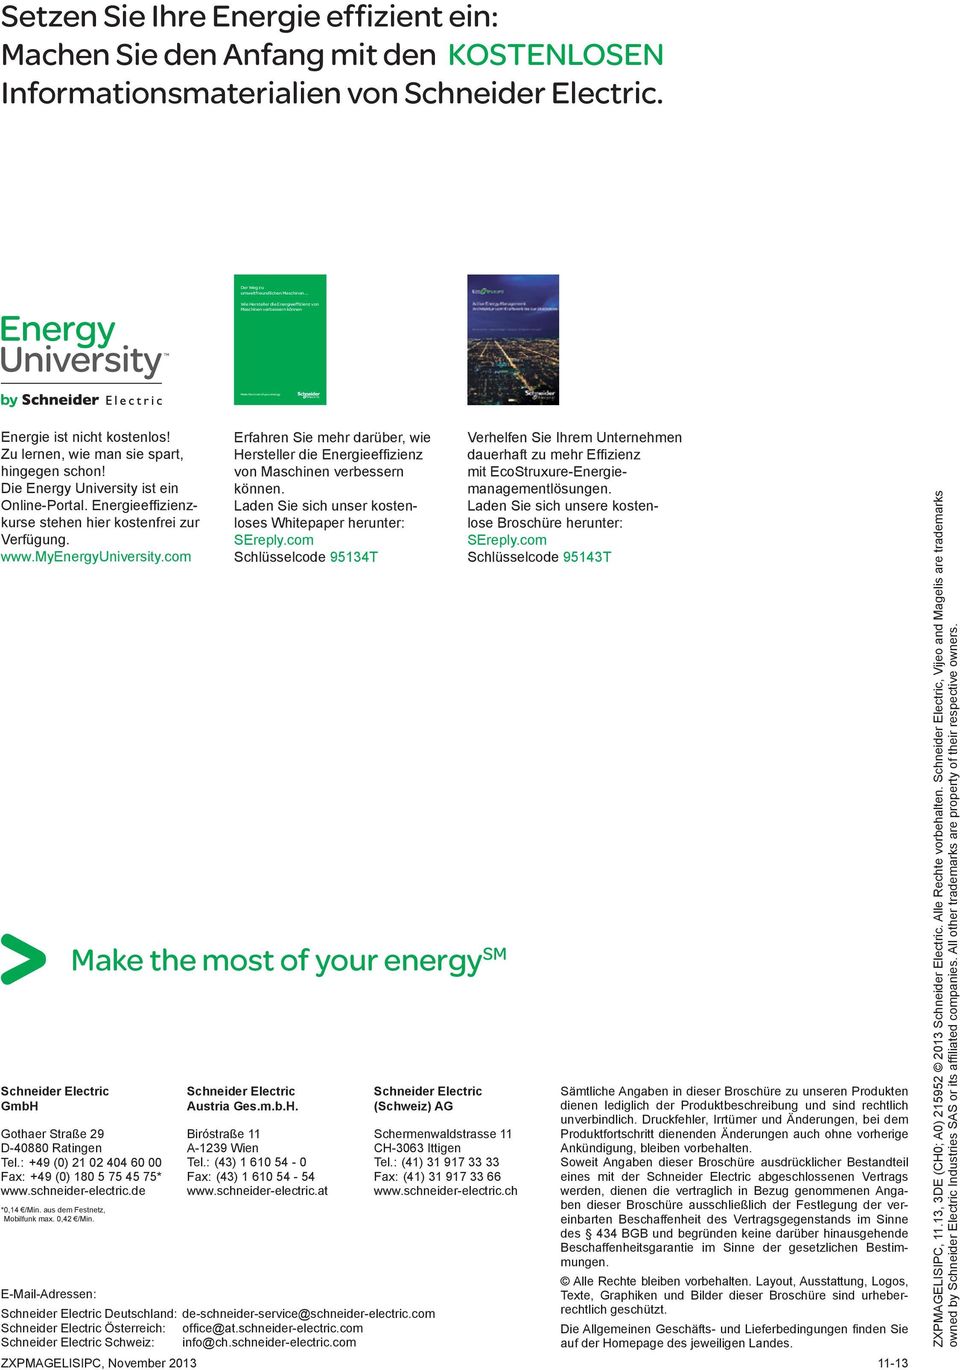 Zu lernen, wie man sie spart, hingegen schon! Die Energy University ist ein OnlinePortal. Energieeffizienzkurse stehen hier kostenfrei zur Verfügung. www.myenergyuniversity.